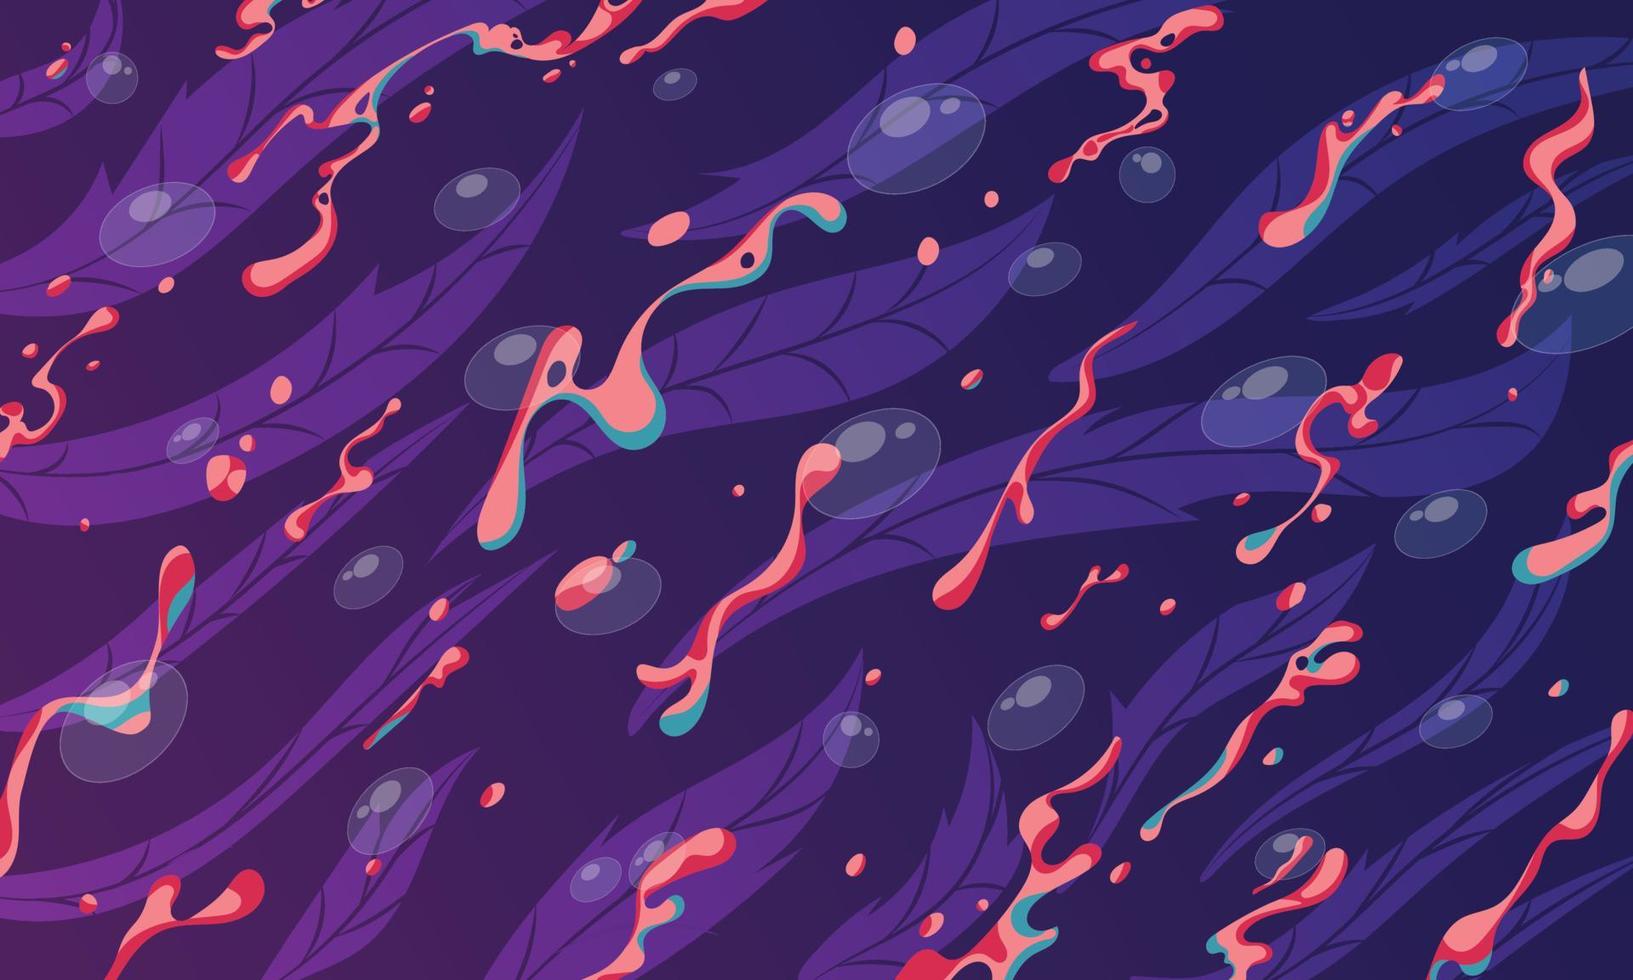 vatten- bakgrund med bubblor och textur med alger i rosa och lila toner vektoriserad vektor